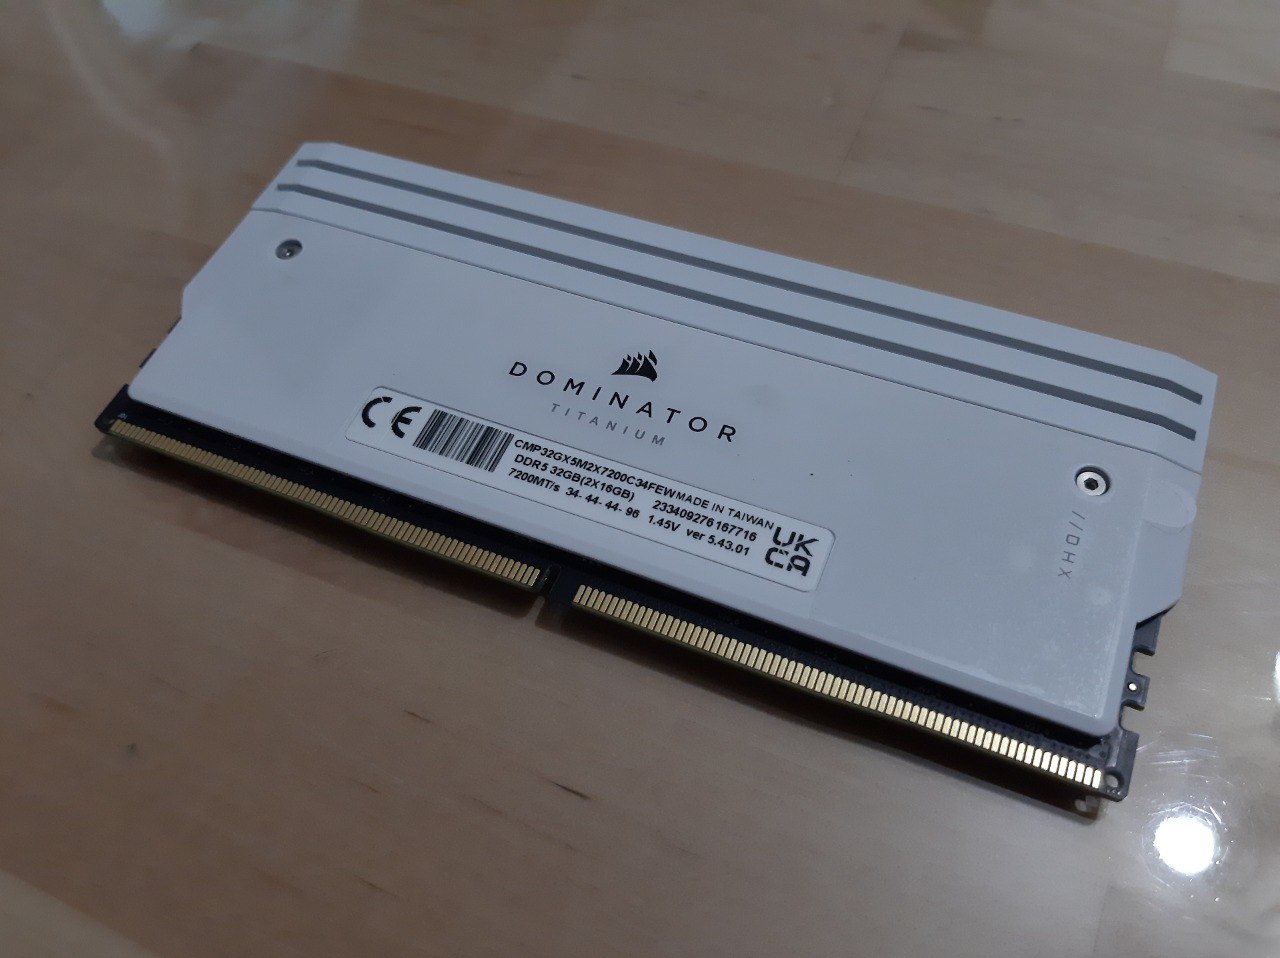 Análisis Corsair Dominator Titanium - Un kit RAM DDR5 premium lleno de elegancia y rendimiento